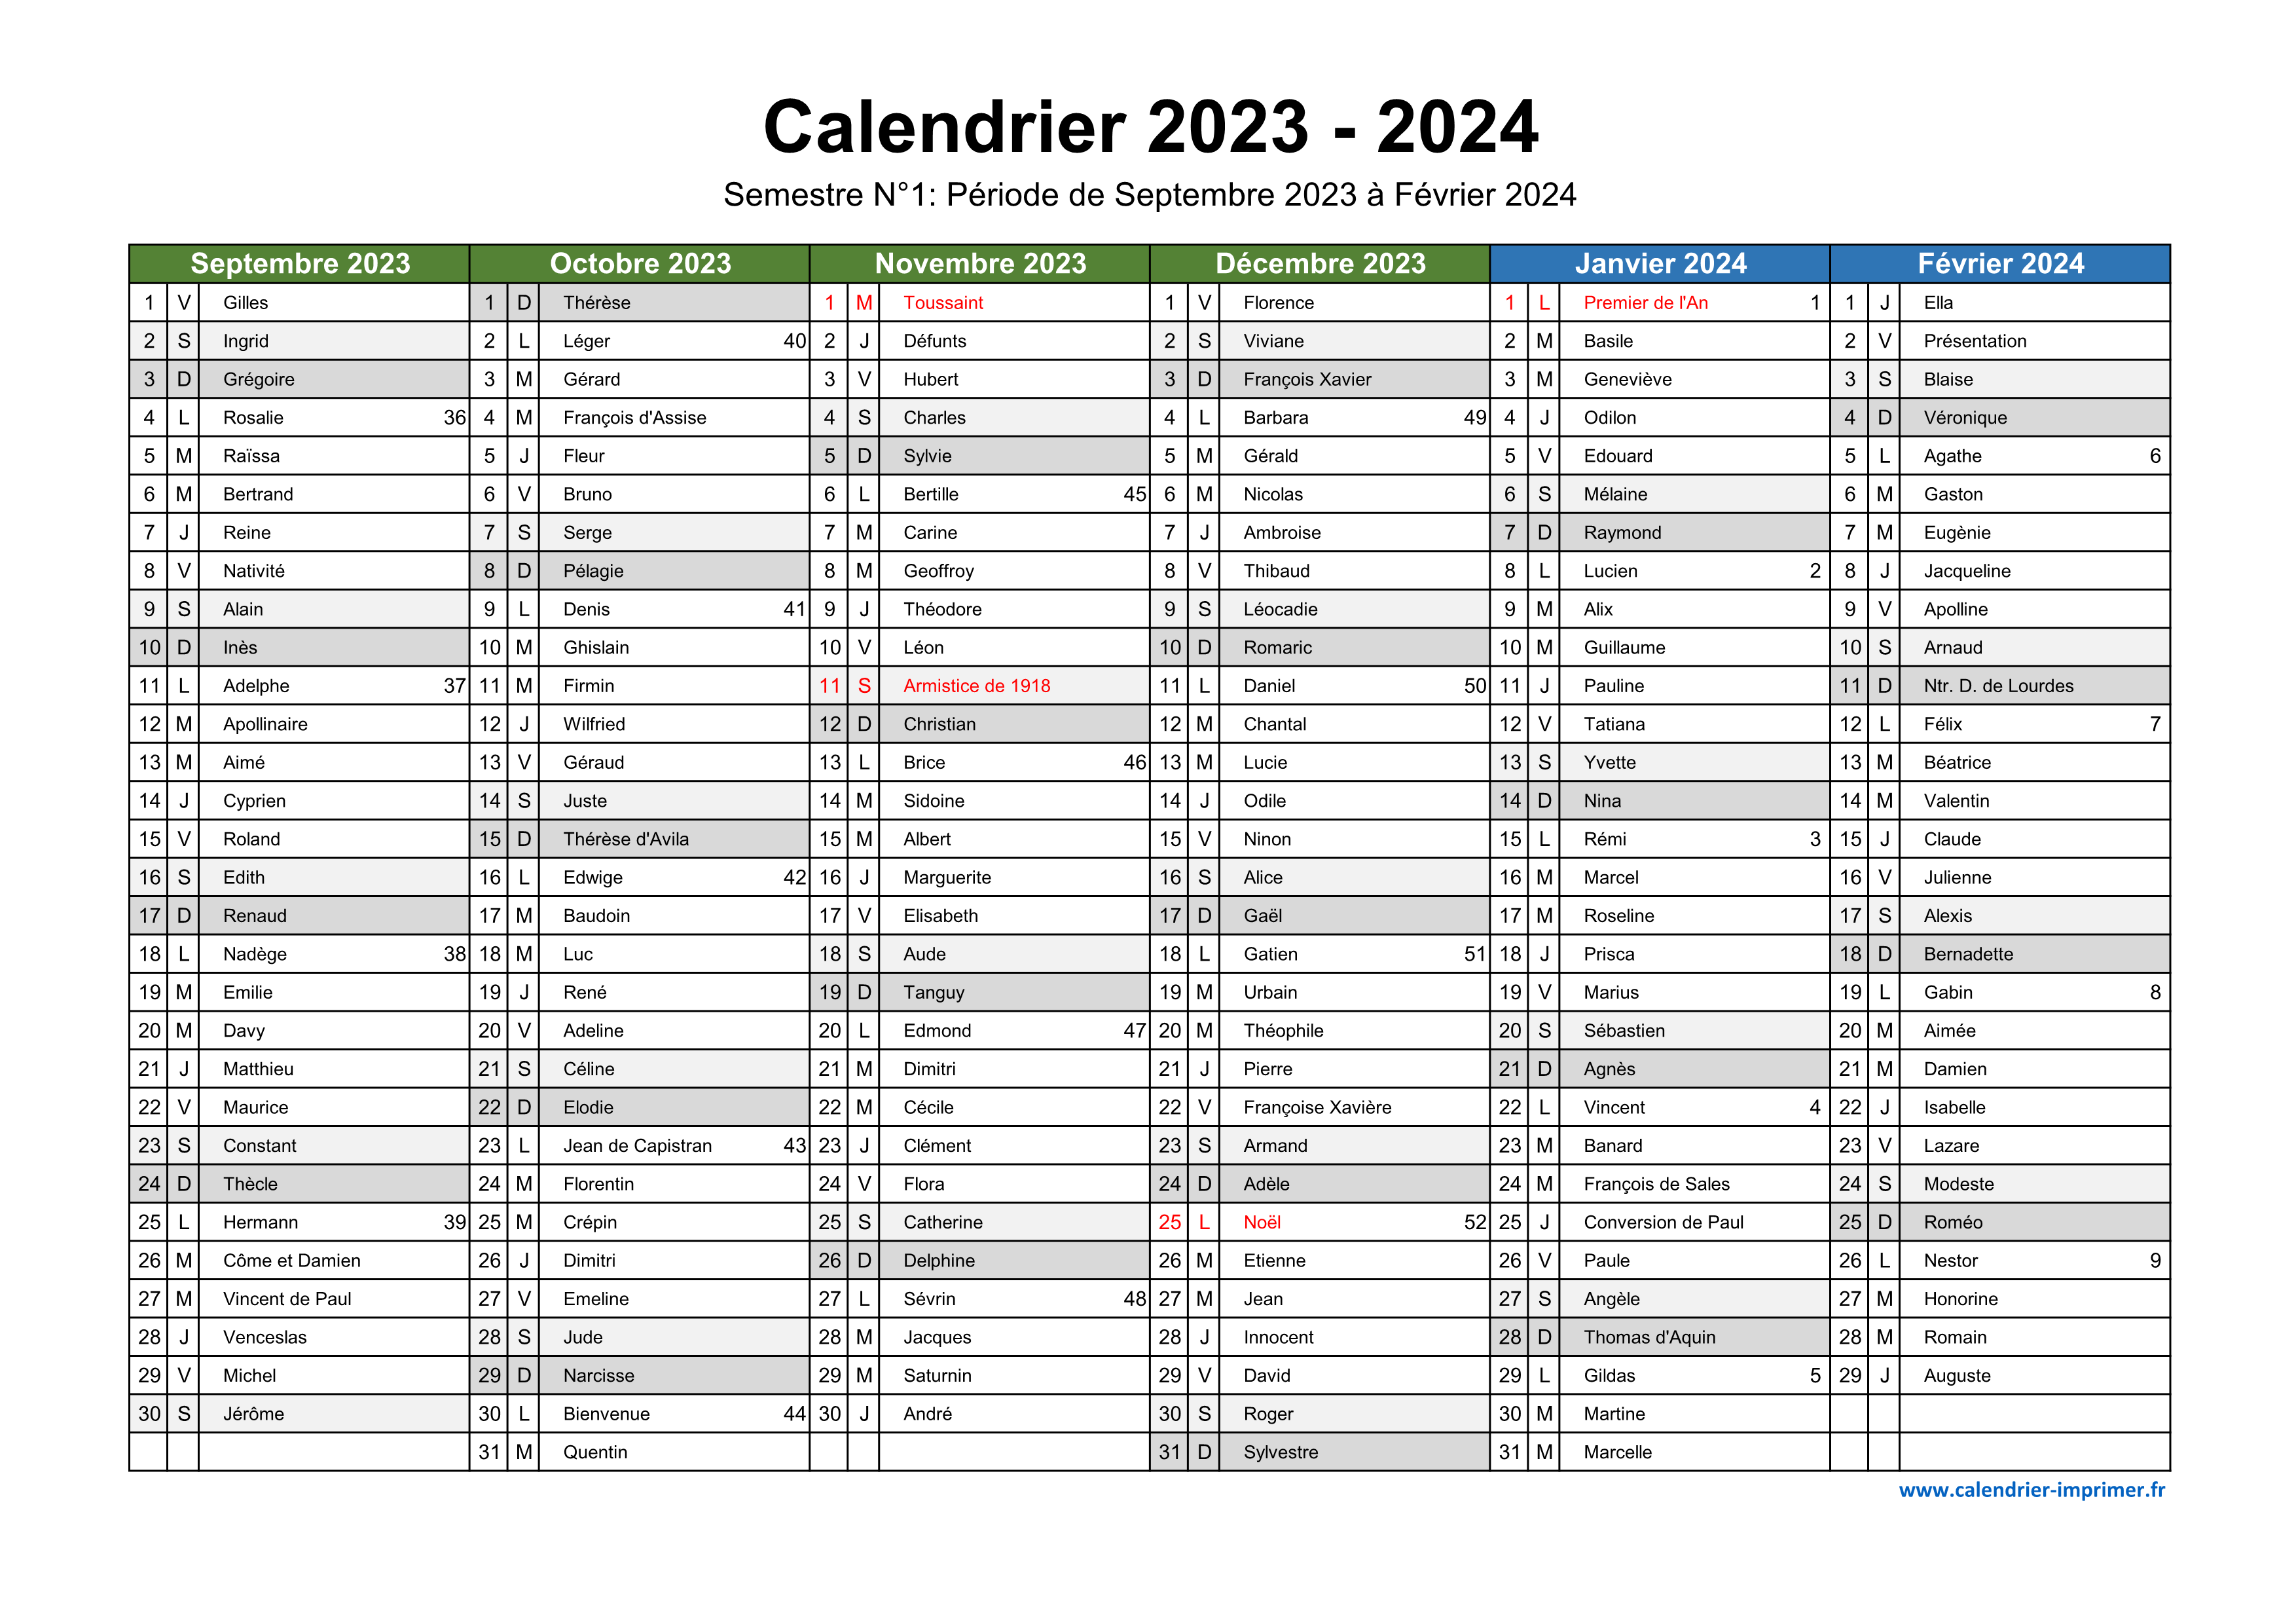 Téléchargez gratuitement notre calendrier 2023-2024